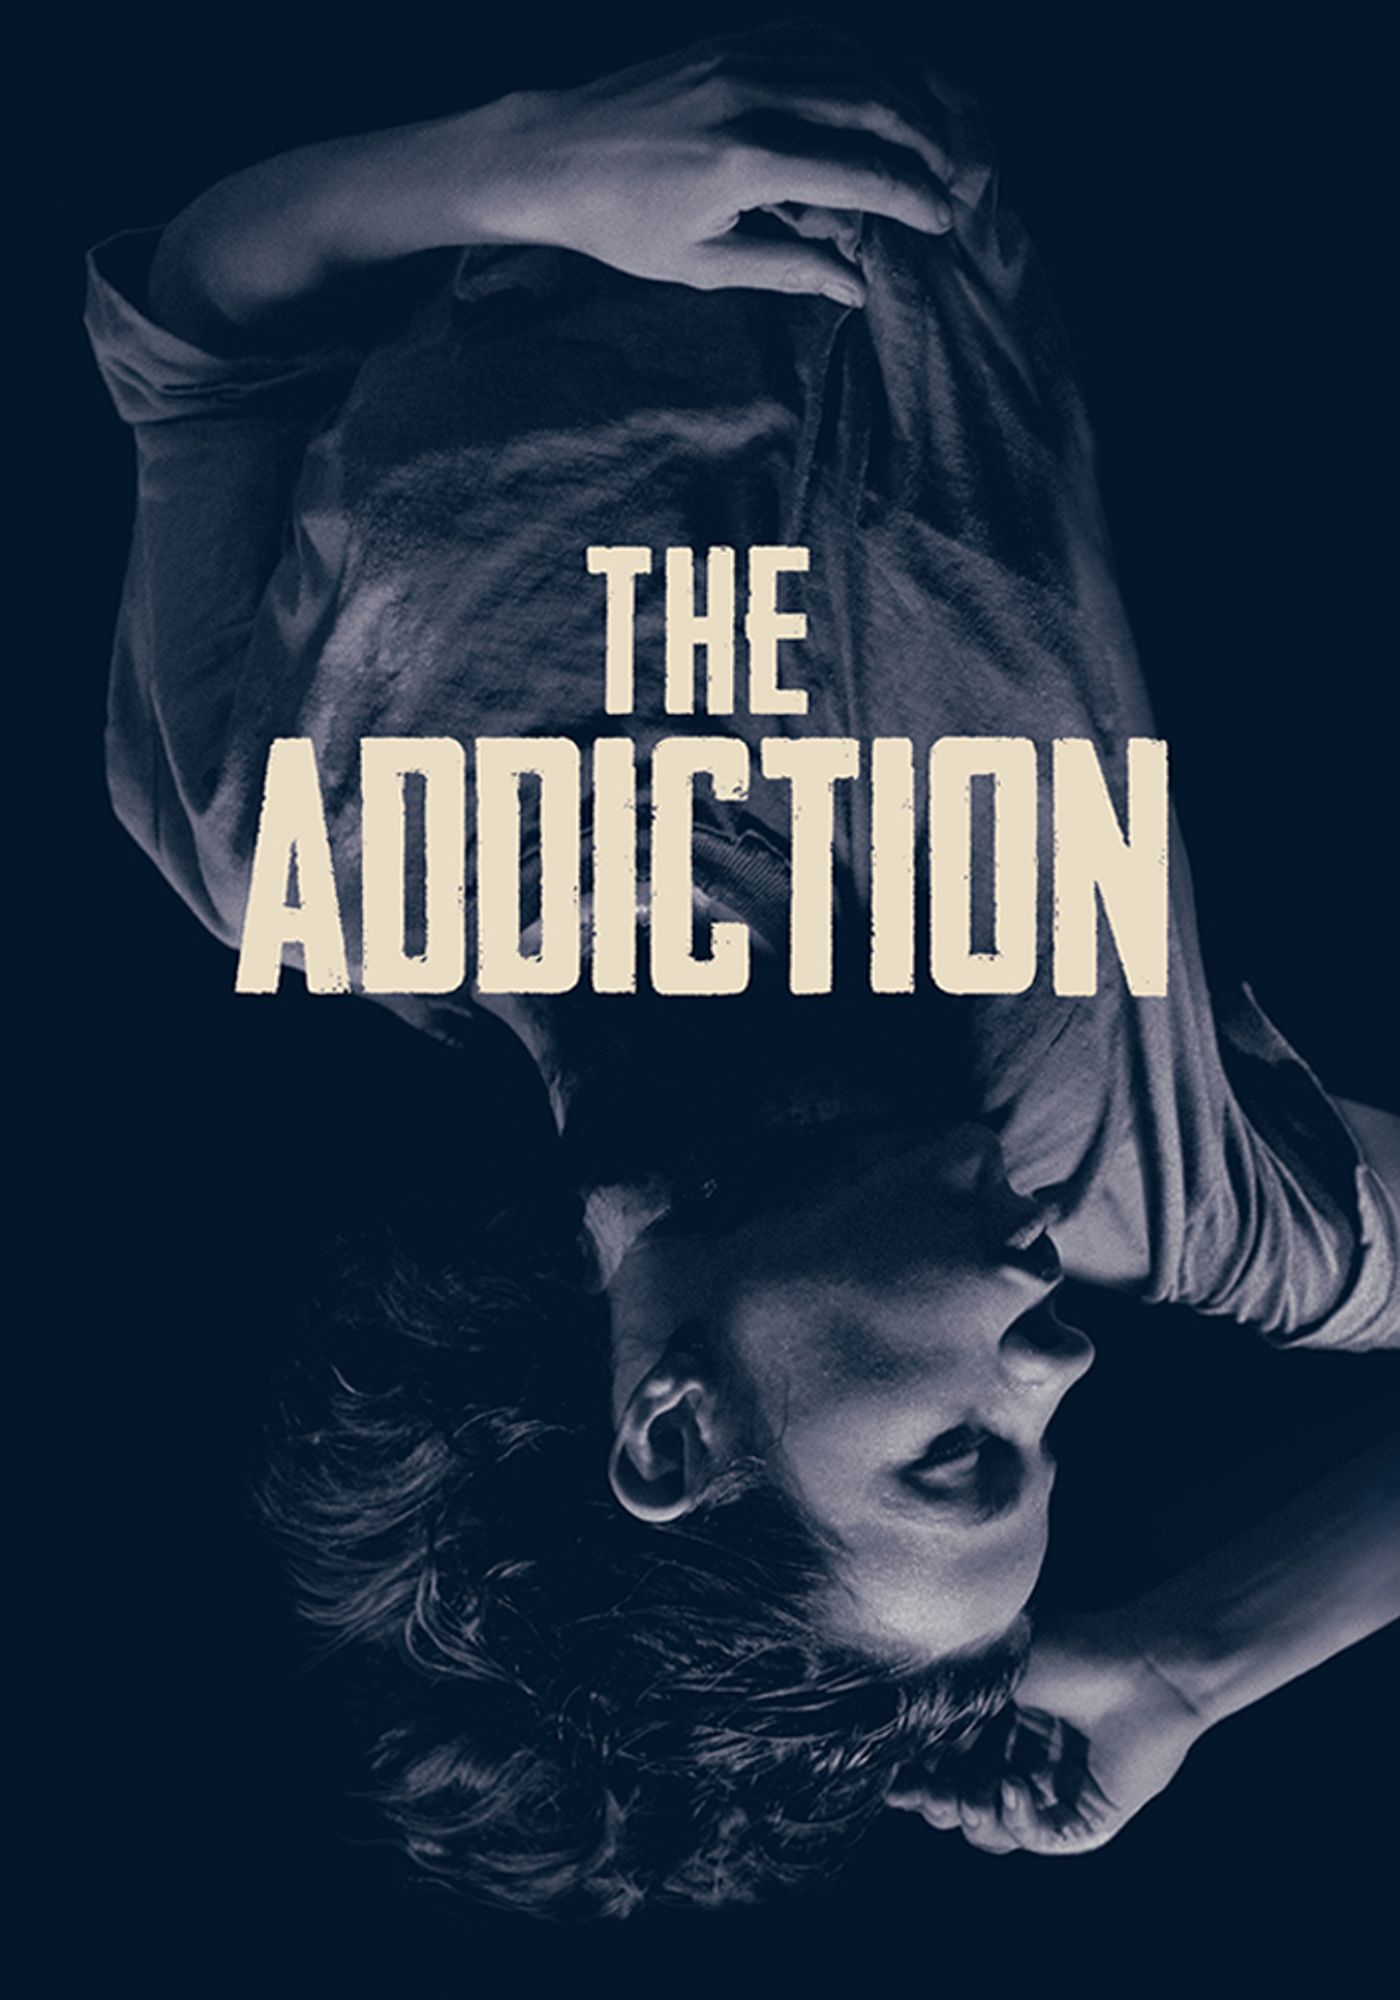 The addiction